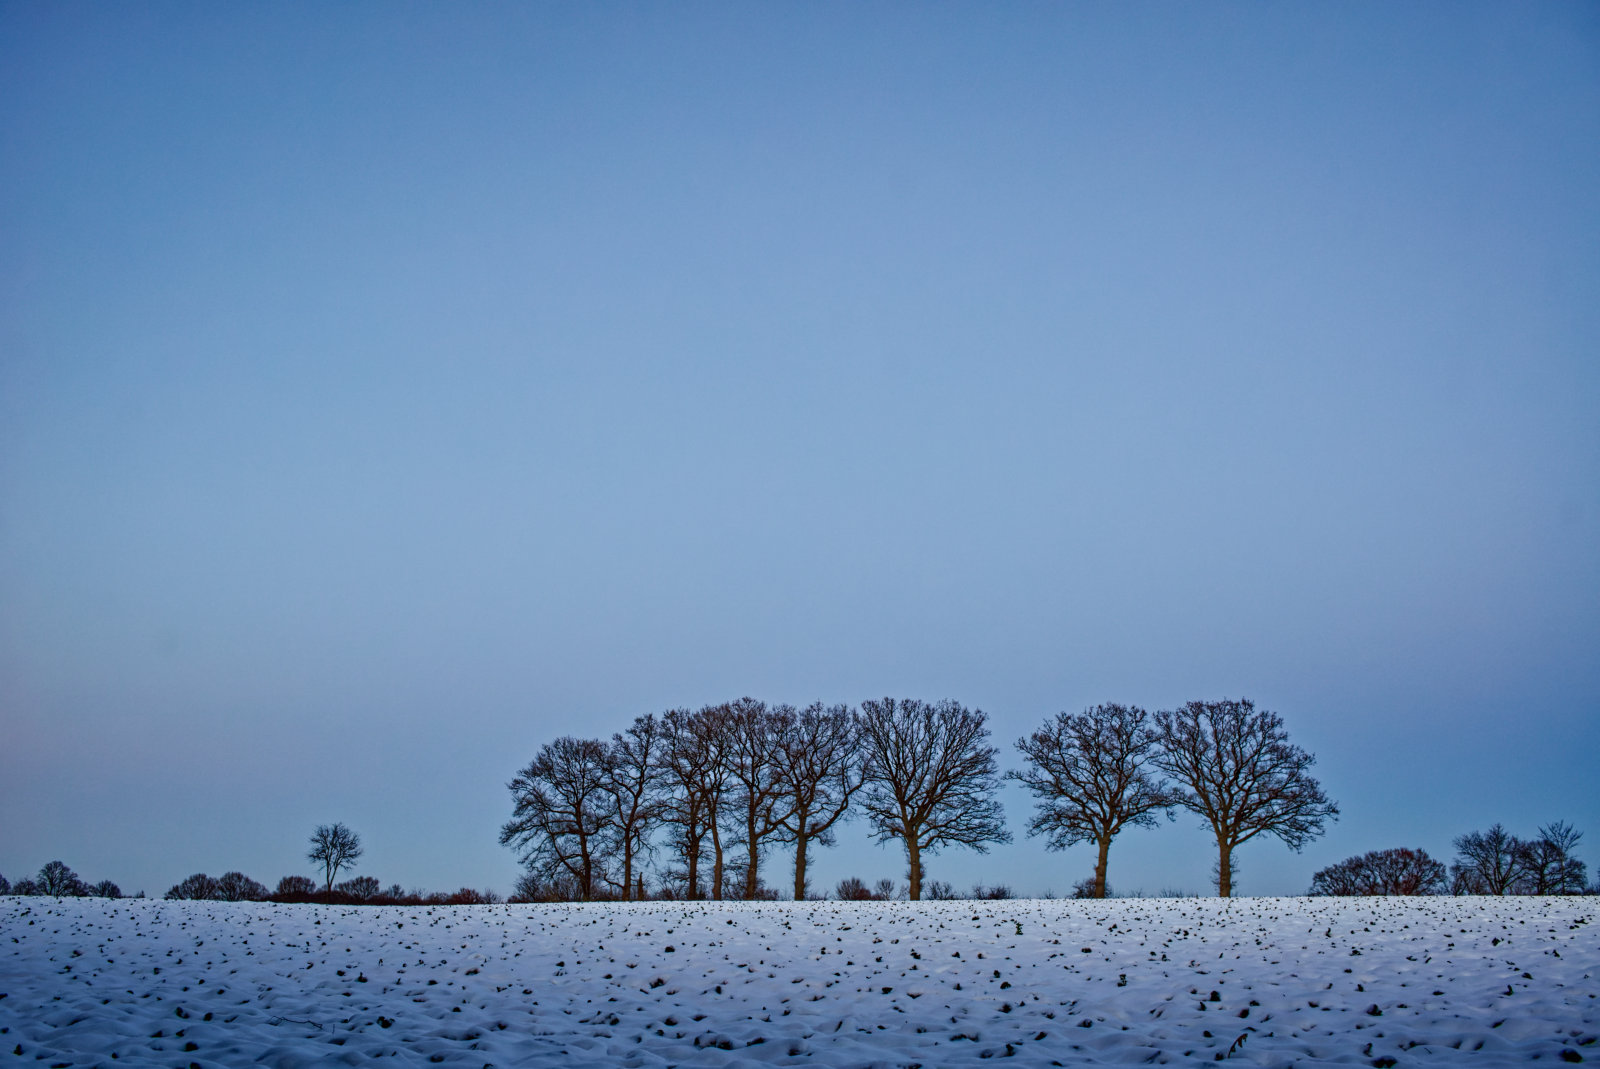 Ein verschneiter Acker, am Horizont die Umrisse von ca. zehn etwa gleich hohen Bäumen, darüber sehr viel klarer Himmel.